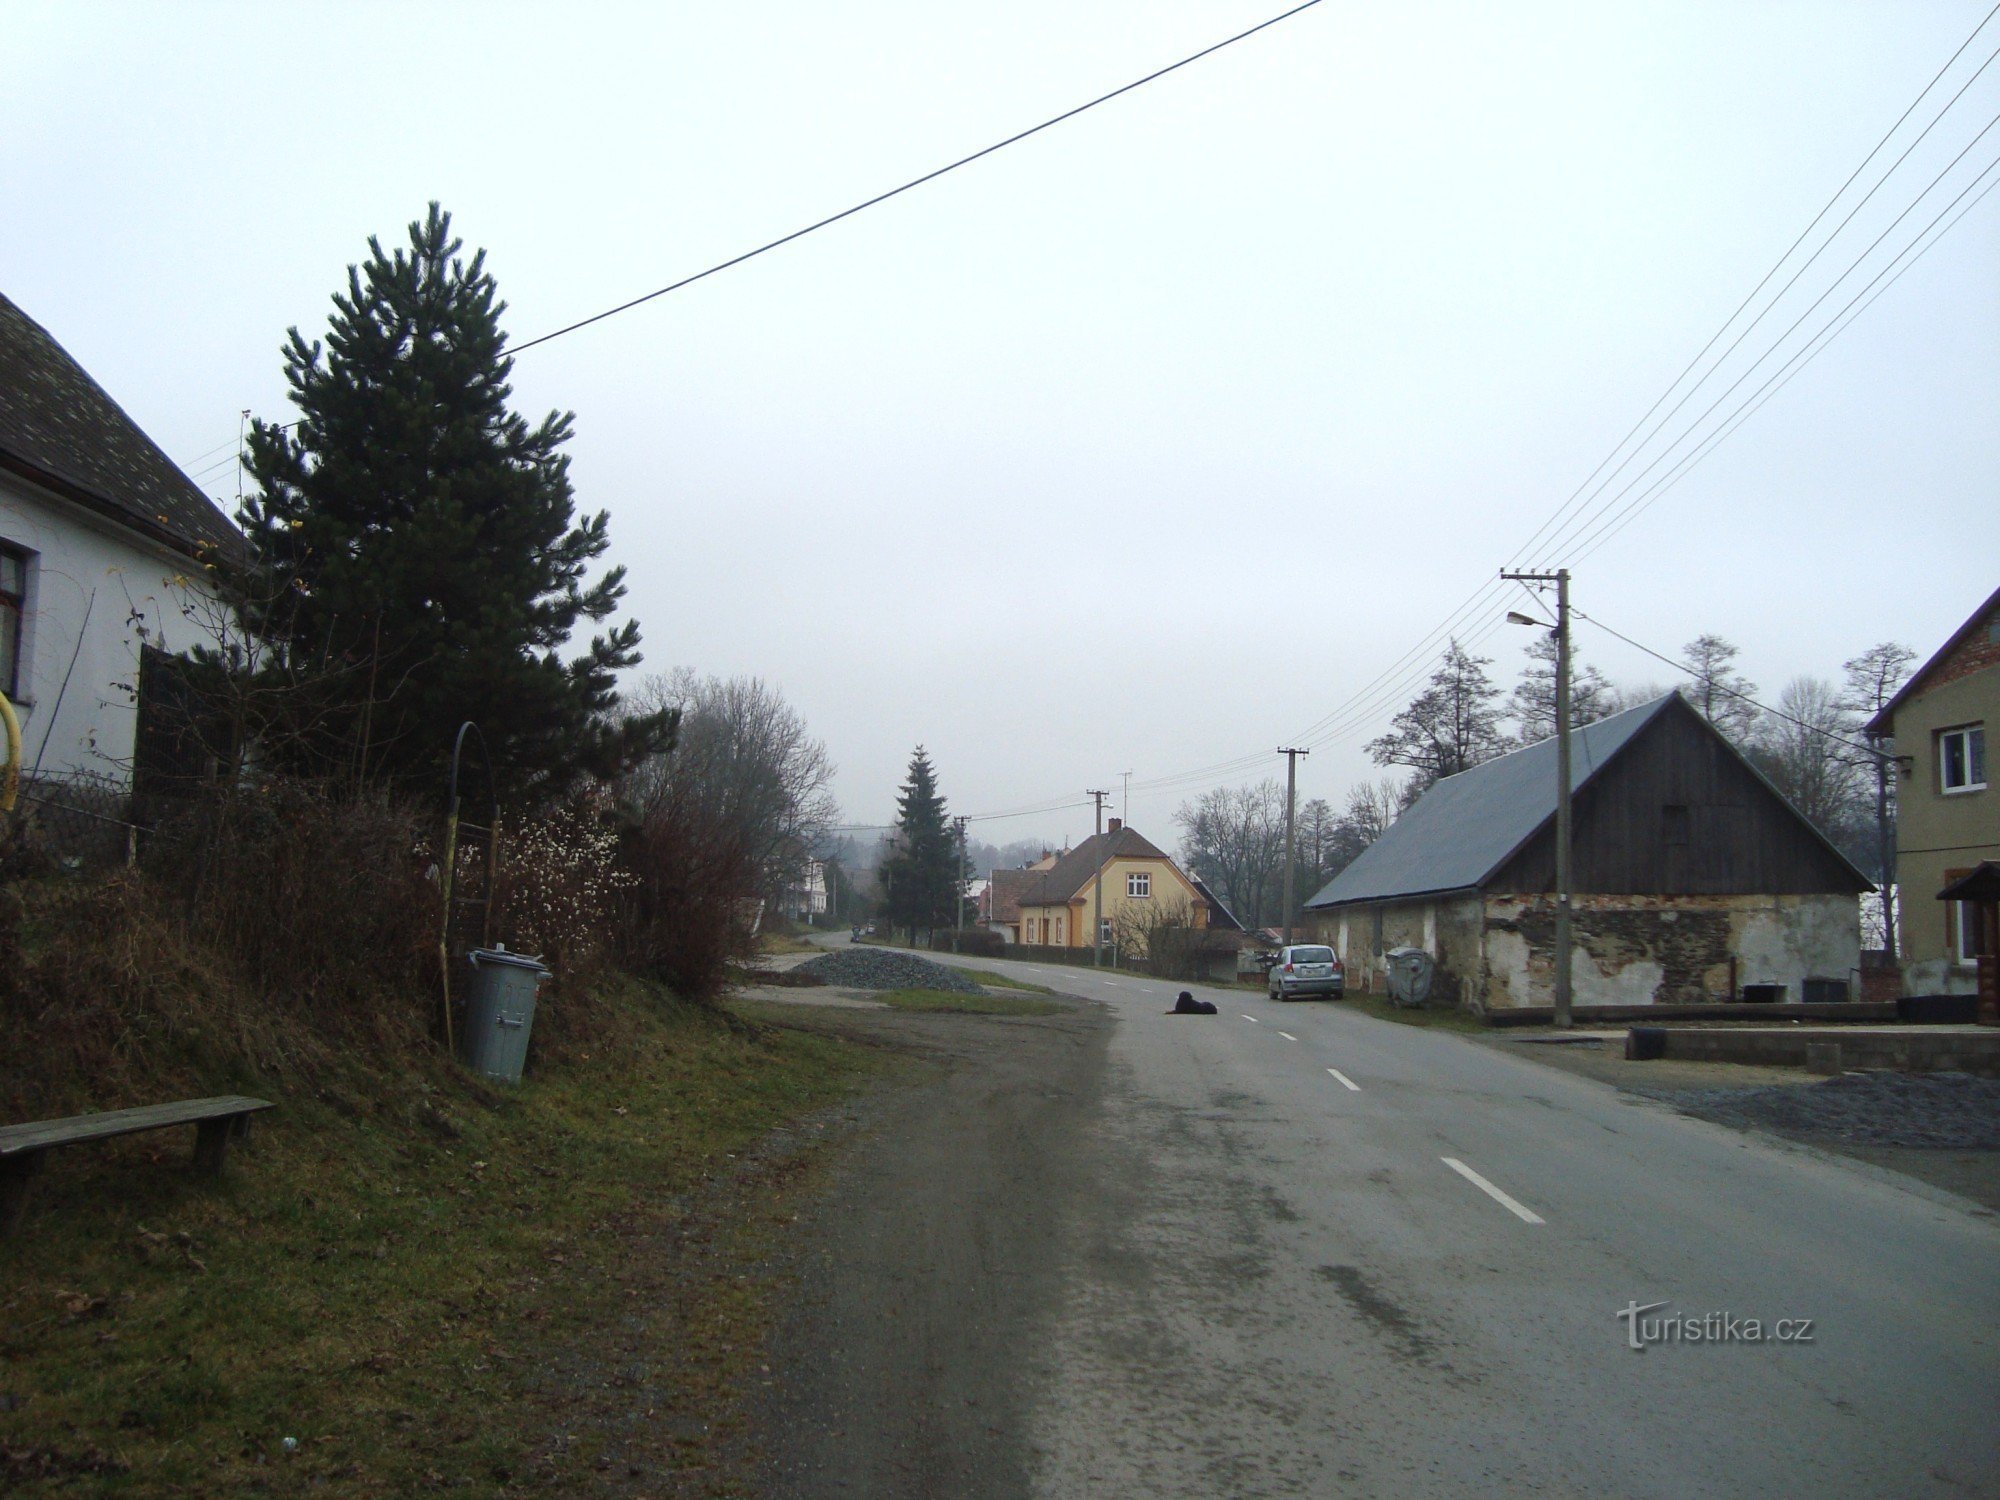 Norberčany-Stará Libavá-centro da vila-Foto: Ulrych Mir.